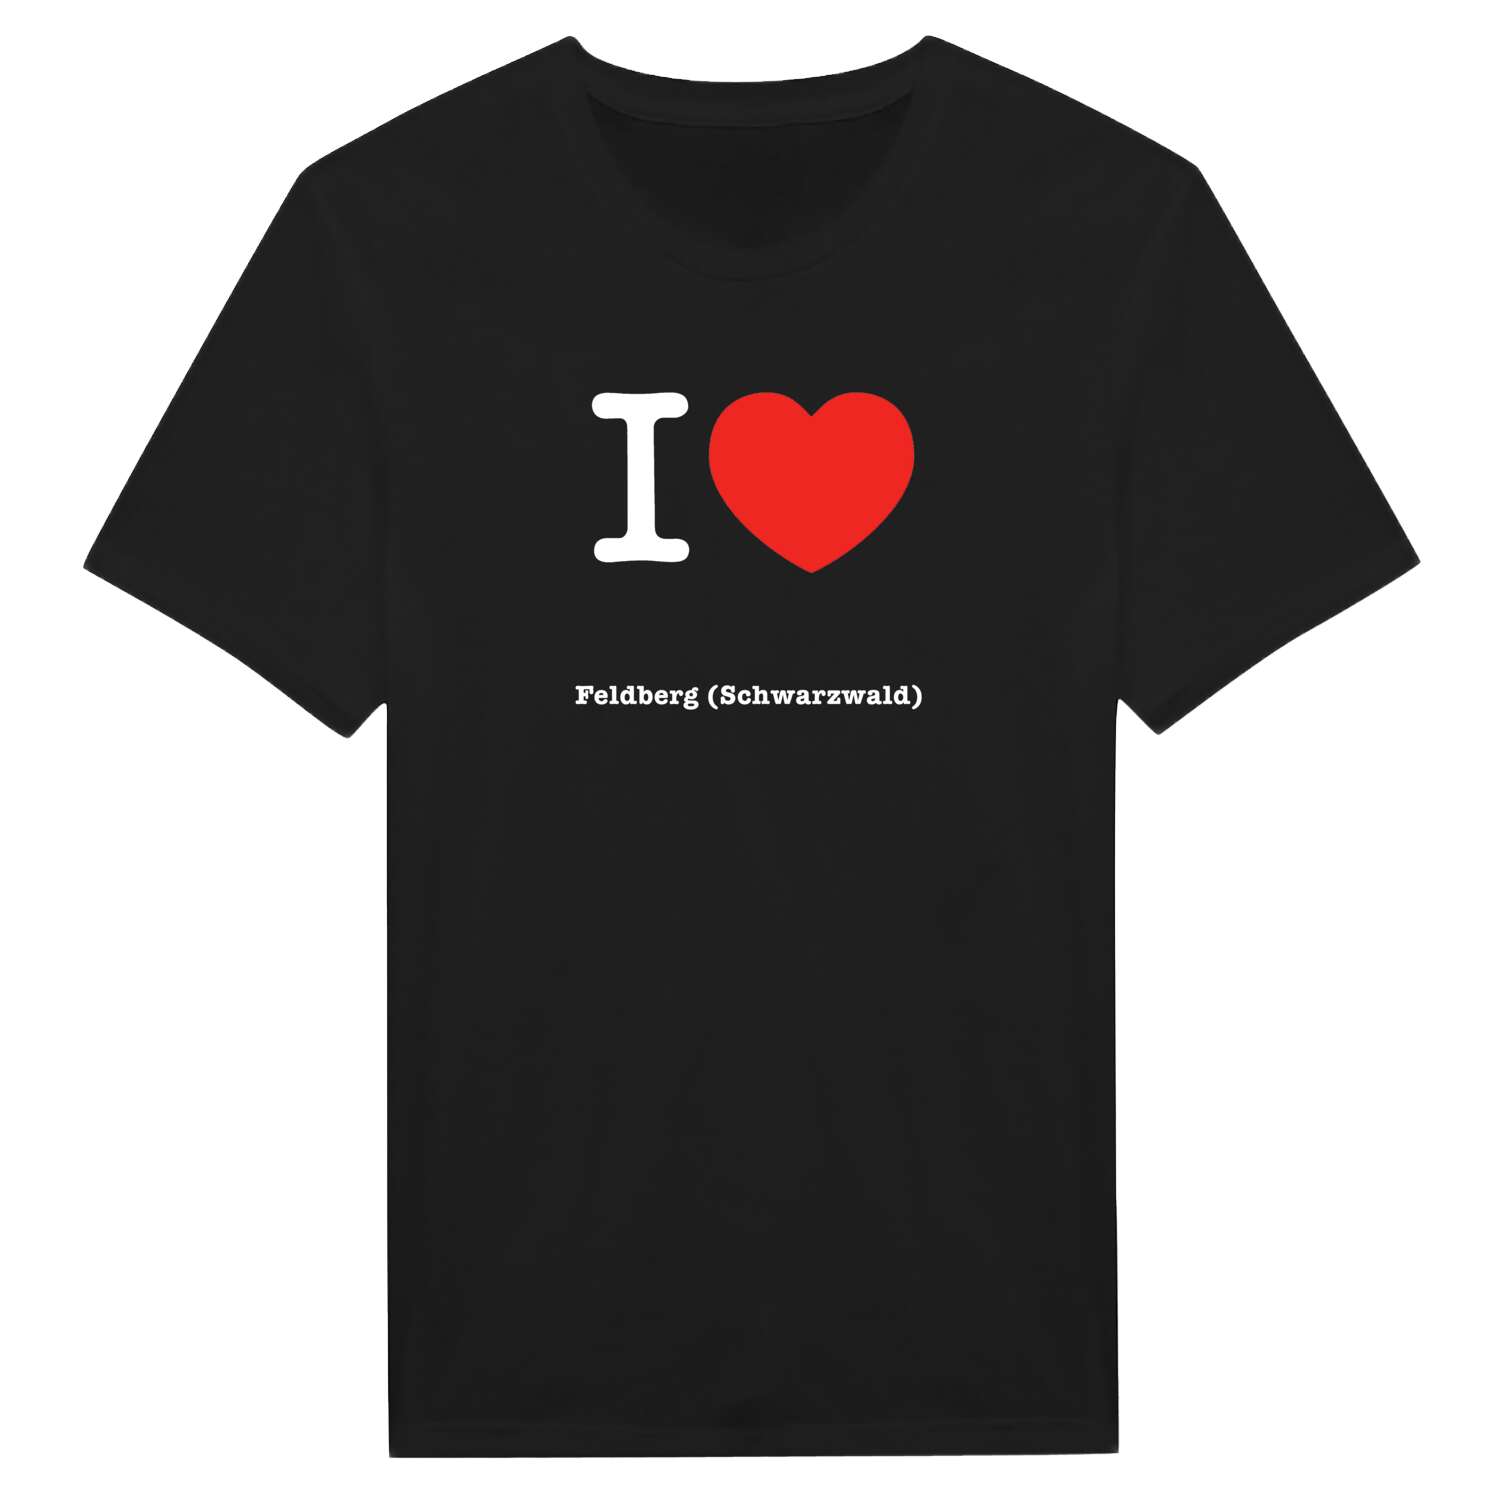 Feldberg (Schwarzwald) T-Shirt »I love«